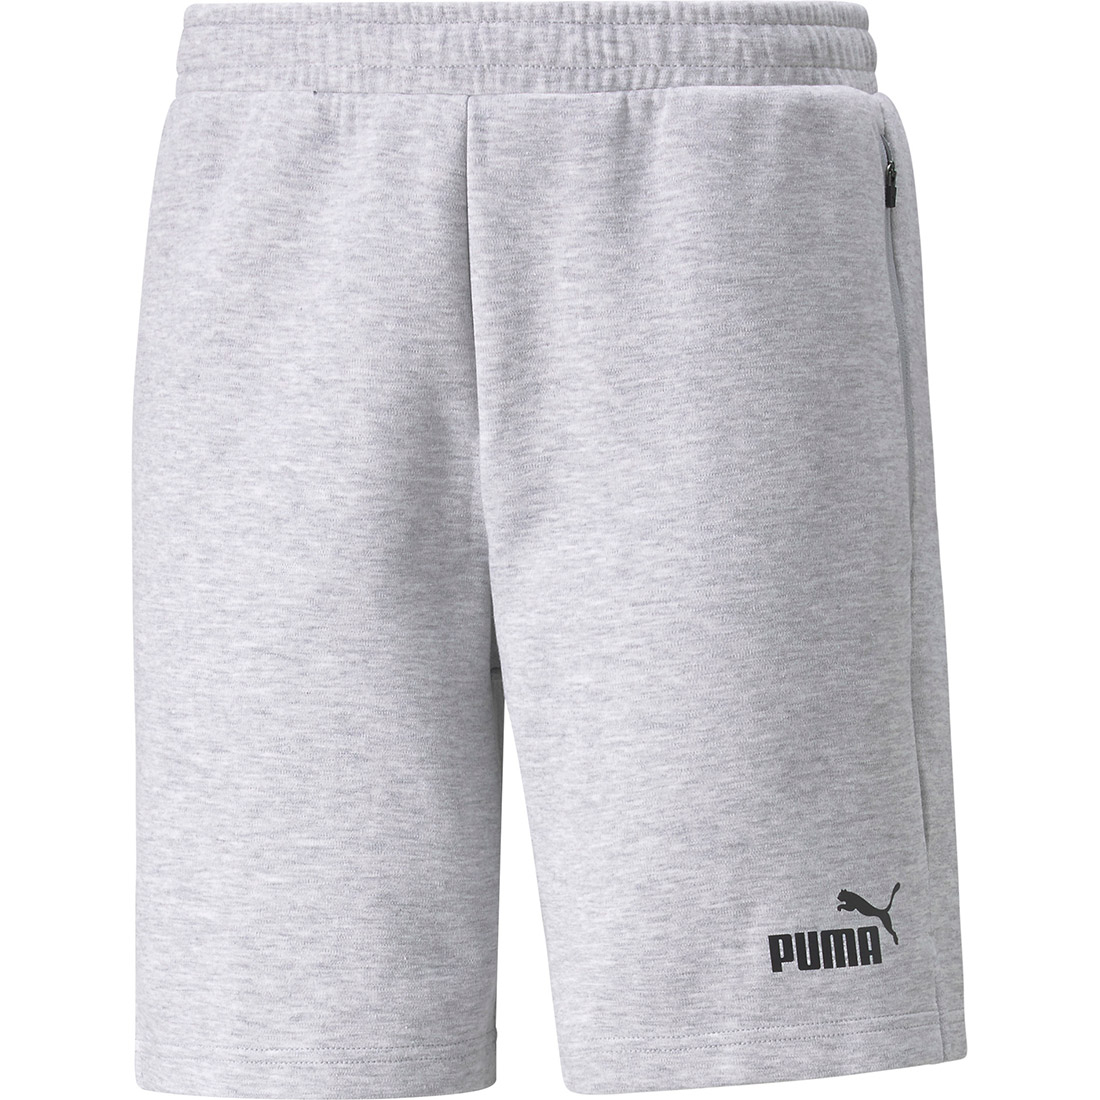 Puma Shorts teamFINAL Casuals grau